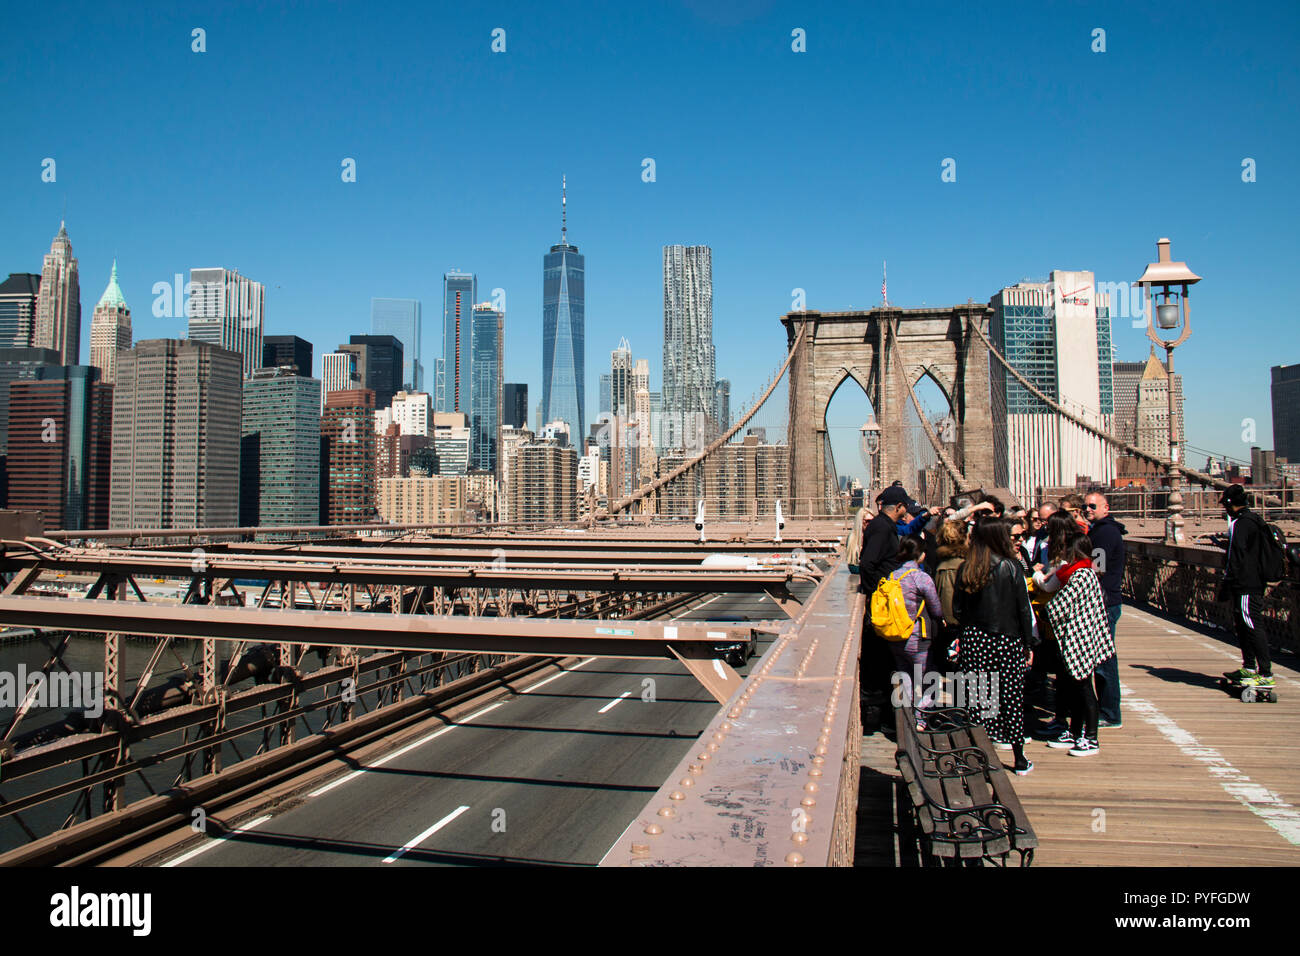 La città di NEW YORK, Stati Uniti d'America - Aprile 2018: persone sul pittoresco ponte di Brooklyn con lo skyline di Manhattan in background in New York City, Stati Uniti d'America Foto Stock